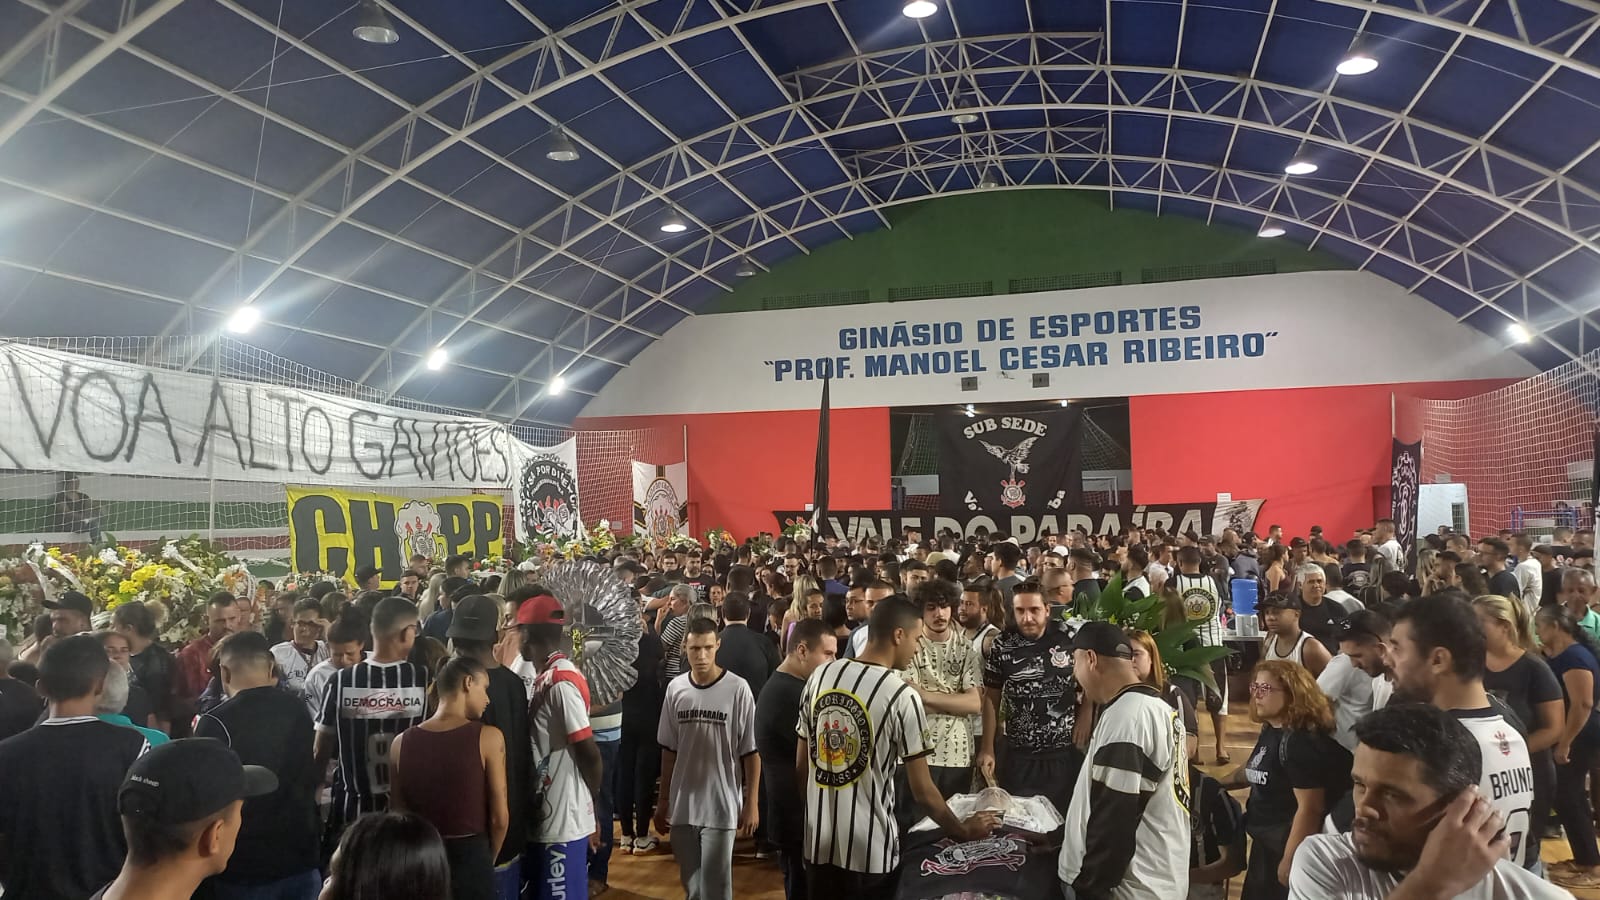 22/08 - Velório coletivo de reúne milhares de torcedores na Quadra Coberta